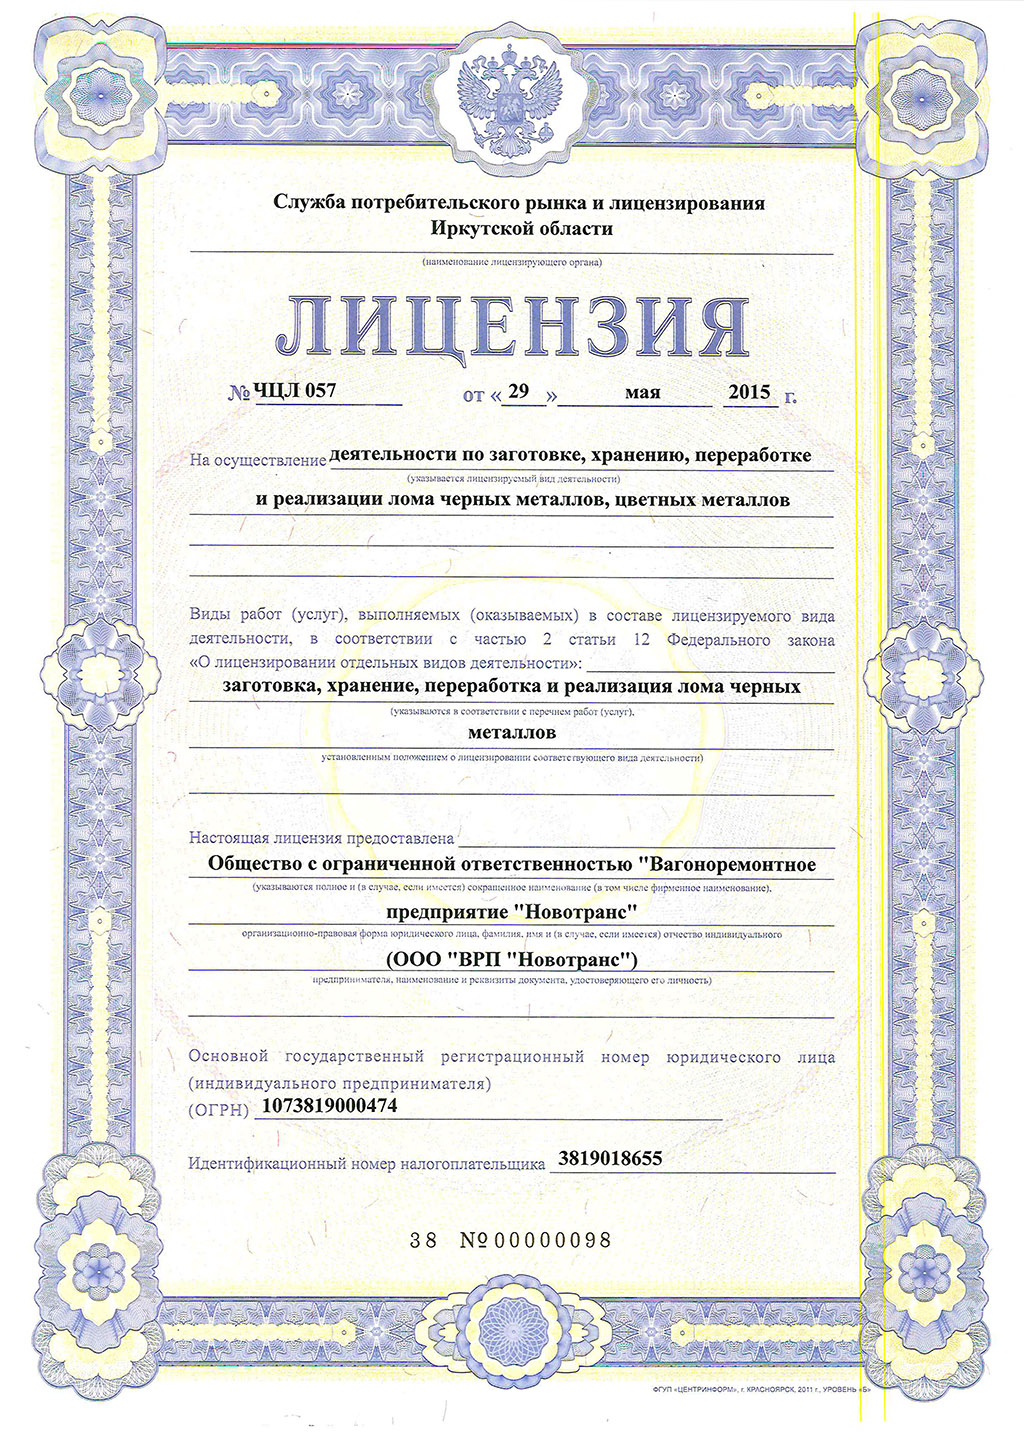 Реализация лома лицензия. Лицензия на реализацию лома цветных металлов. Лицензия на закупку лома черных и цветных металлов. Украинская лицензия на металлолом. Служба потребительского рынка и лицензирования Иркутской области.